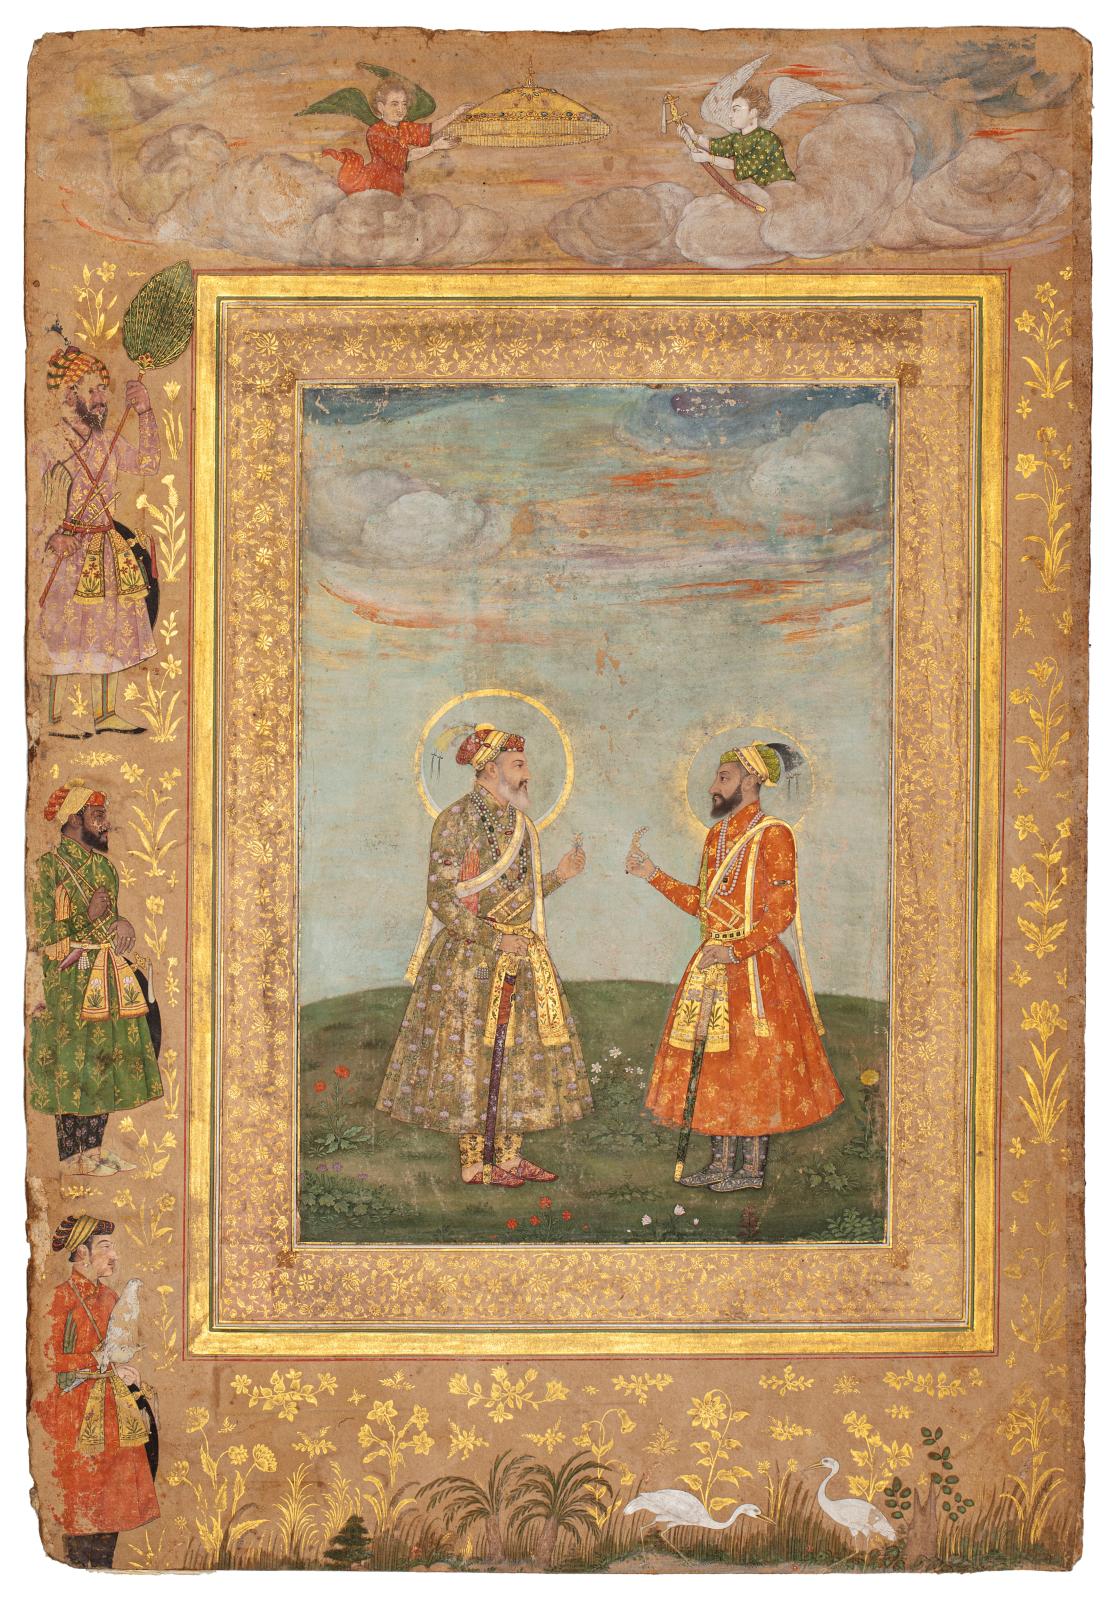 Inde, vers 1659, attribué à Anup Chatar. Double portrait de Shah Jahan et Aurengzeb Alamgir, page inédite du Late Shah Jahan Album, gouach